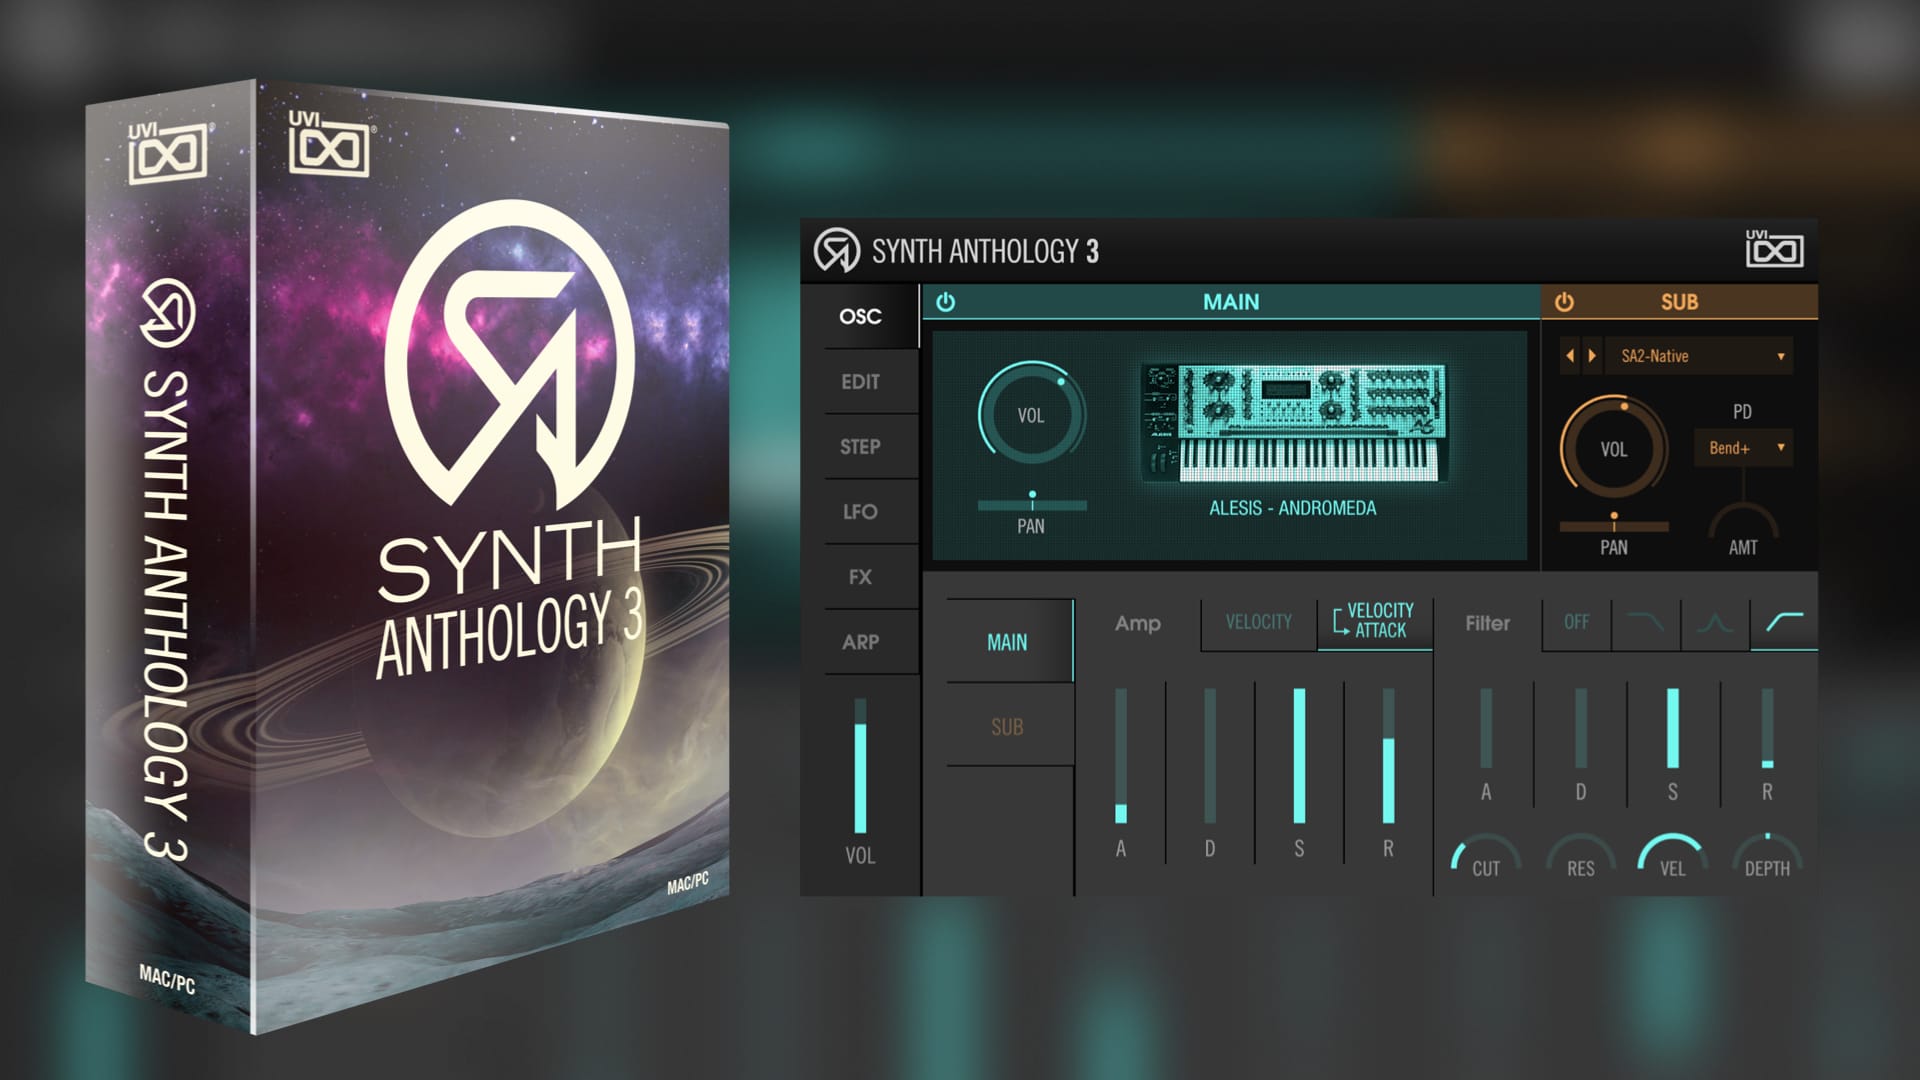 UVI Synth Anthology 3